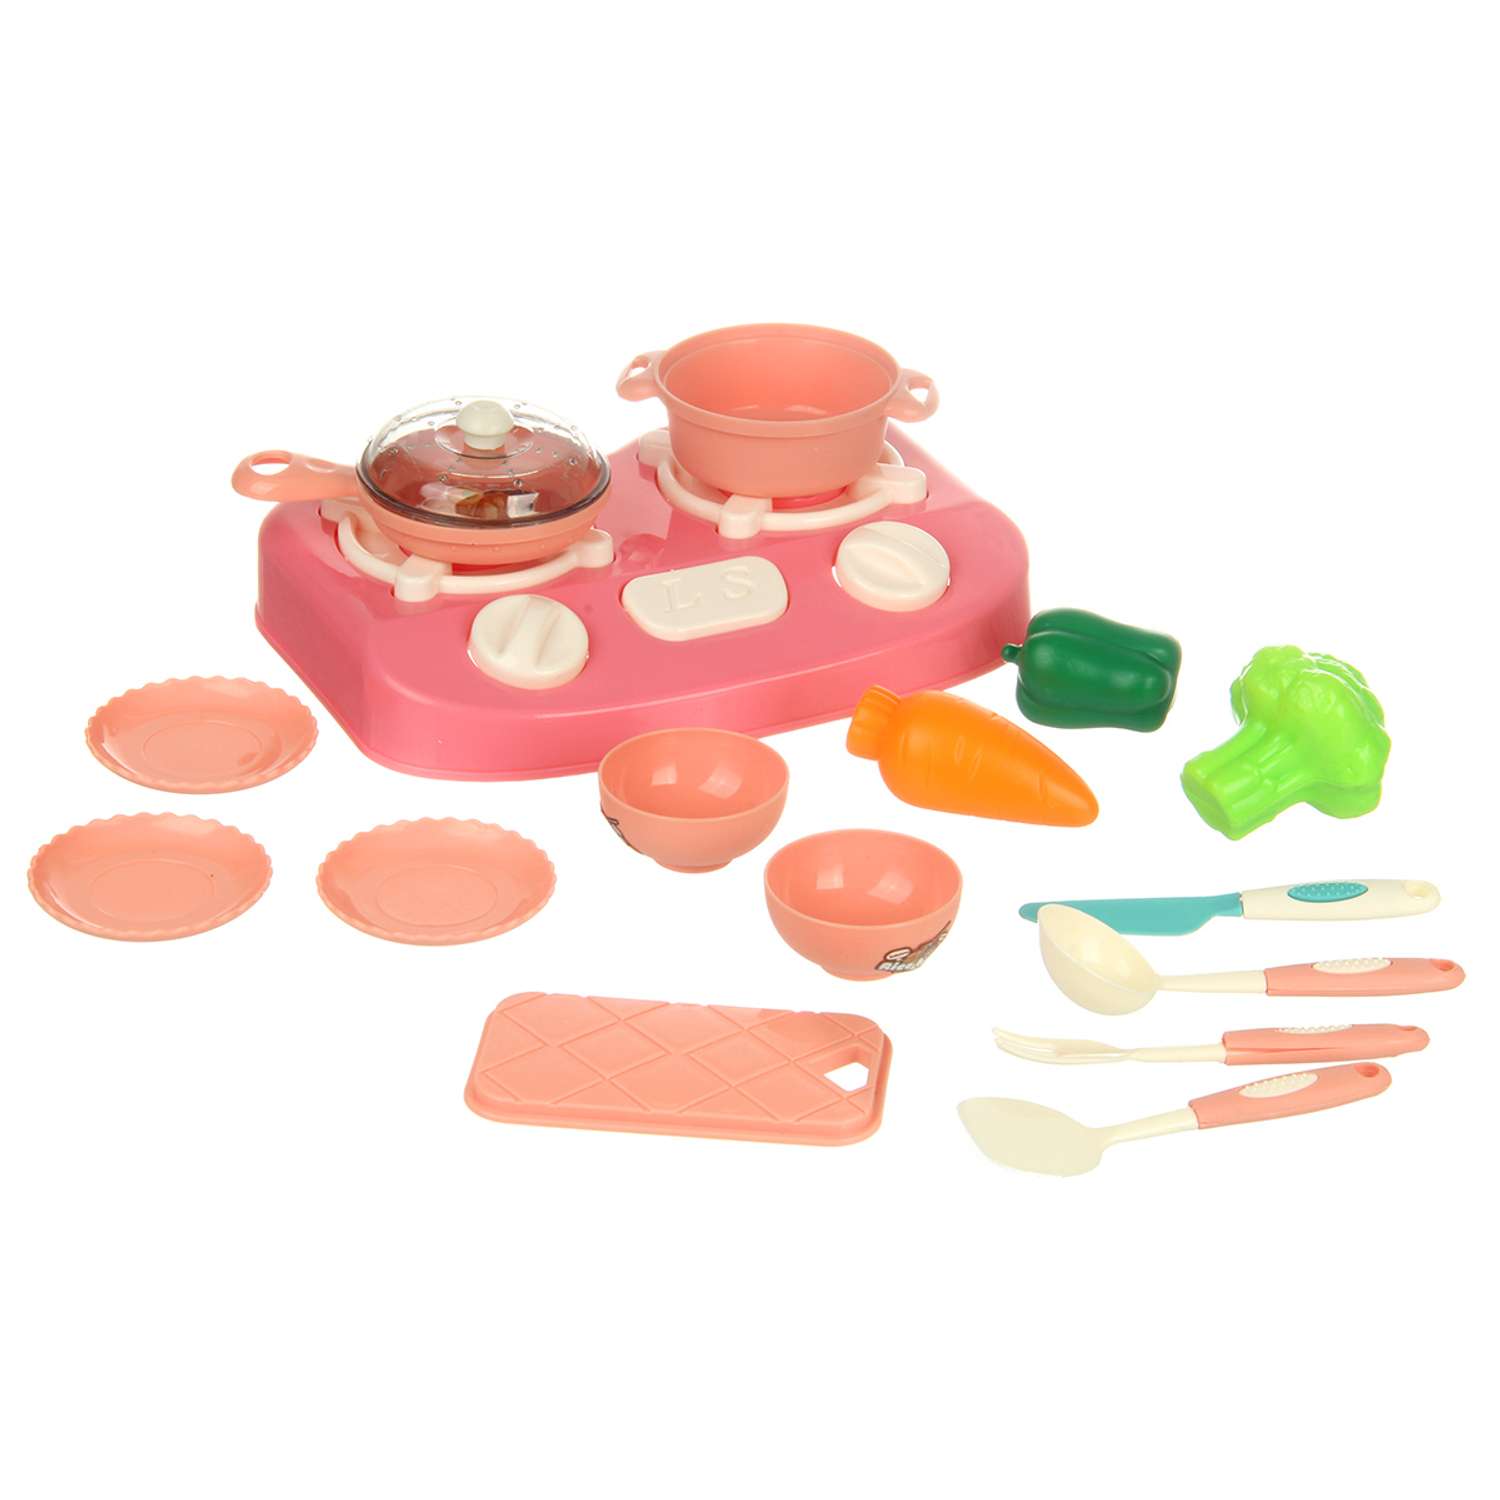 Детская посуда игрушечная Veld Co с плитой и приборами 17 предметов - фото 1